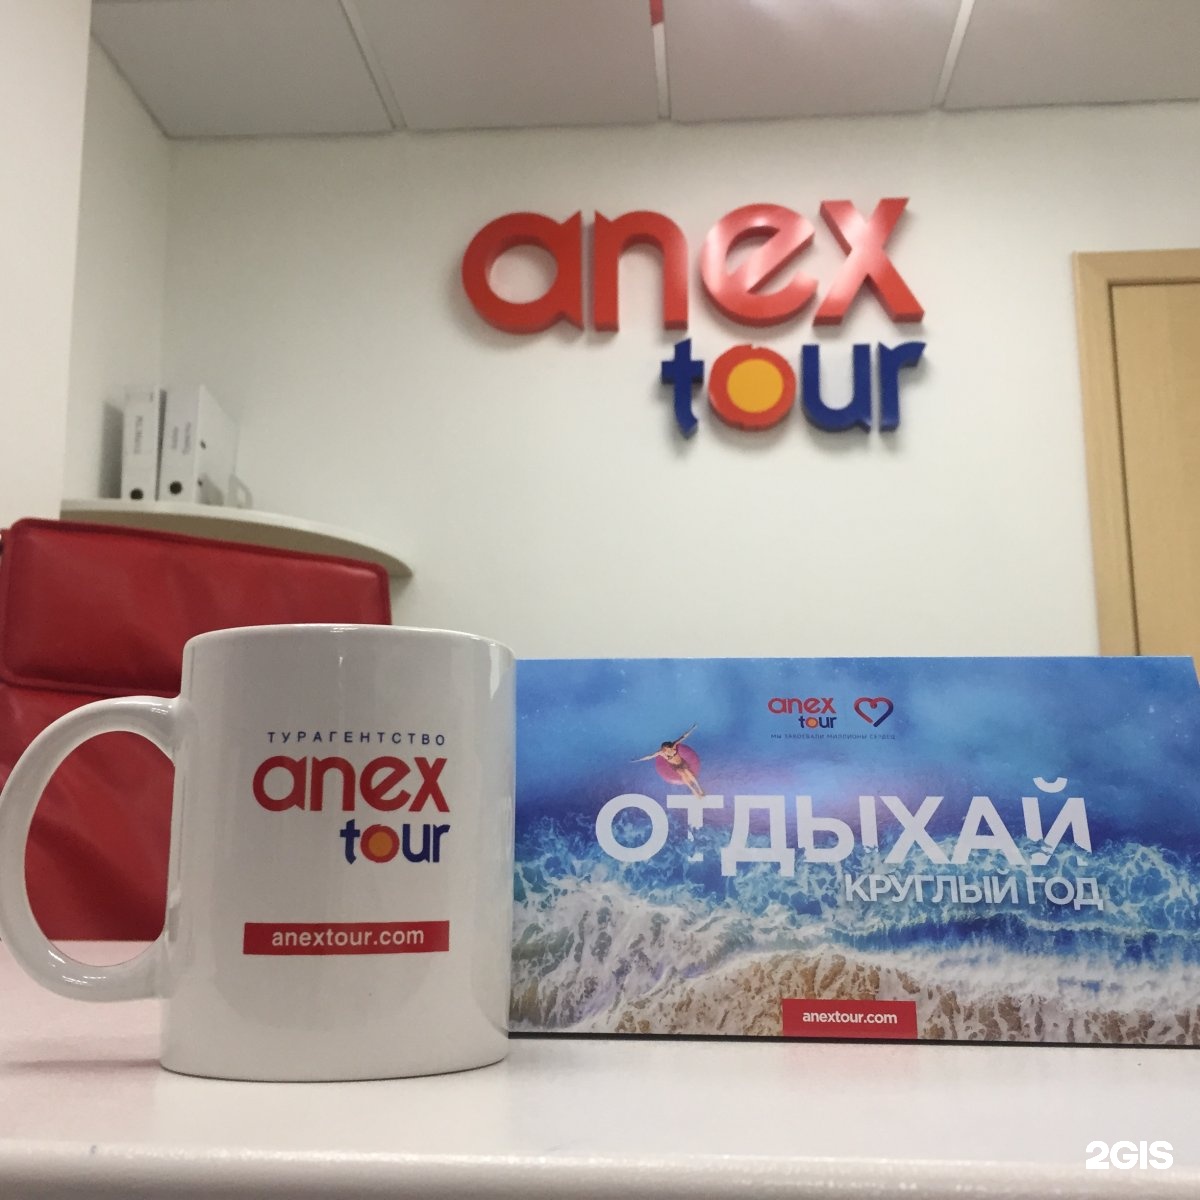 Anex tour офисы. Анекс тур. Соникс тур. Логотип компании Анекс тур. Реклама Анекс тура.